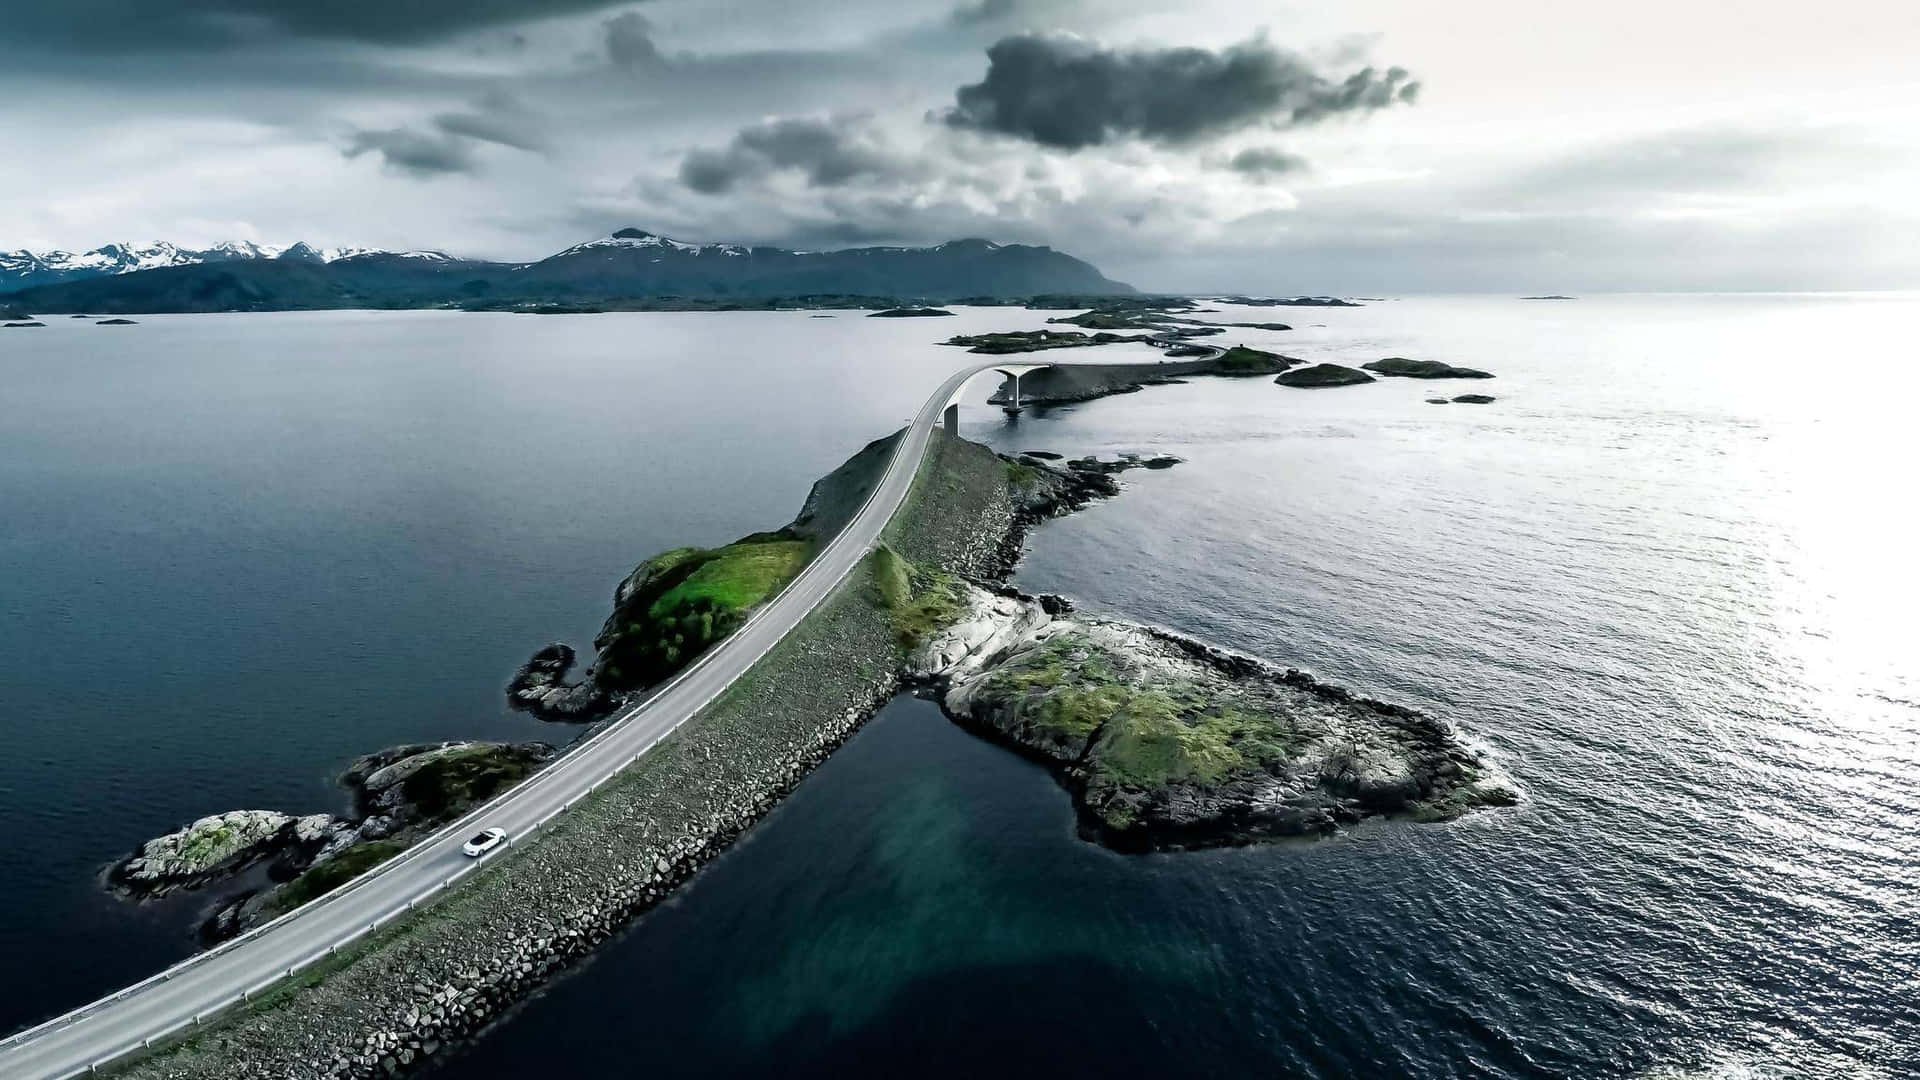 Атлантический океан самый большой остров. Атлантик роуд в Норвегии. Мост Атлантик роуд Норвегия. Атлантическая дорога в Норвегии. Атлантик оушен.